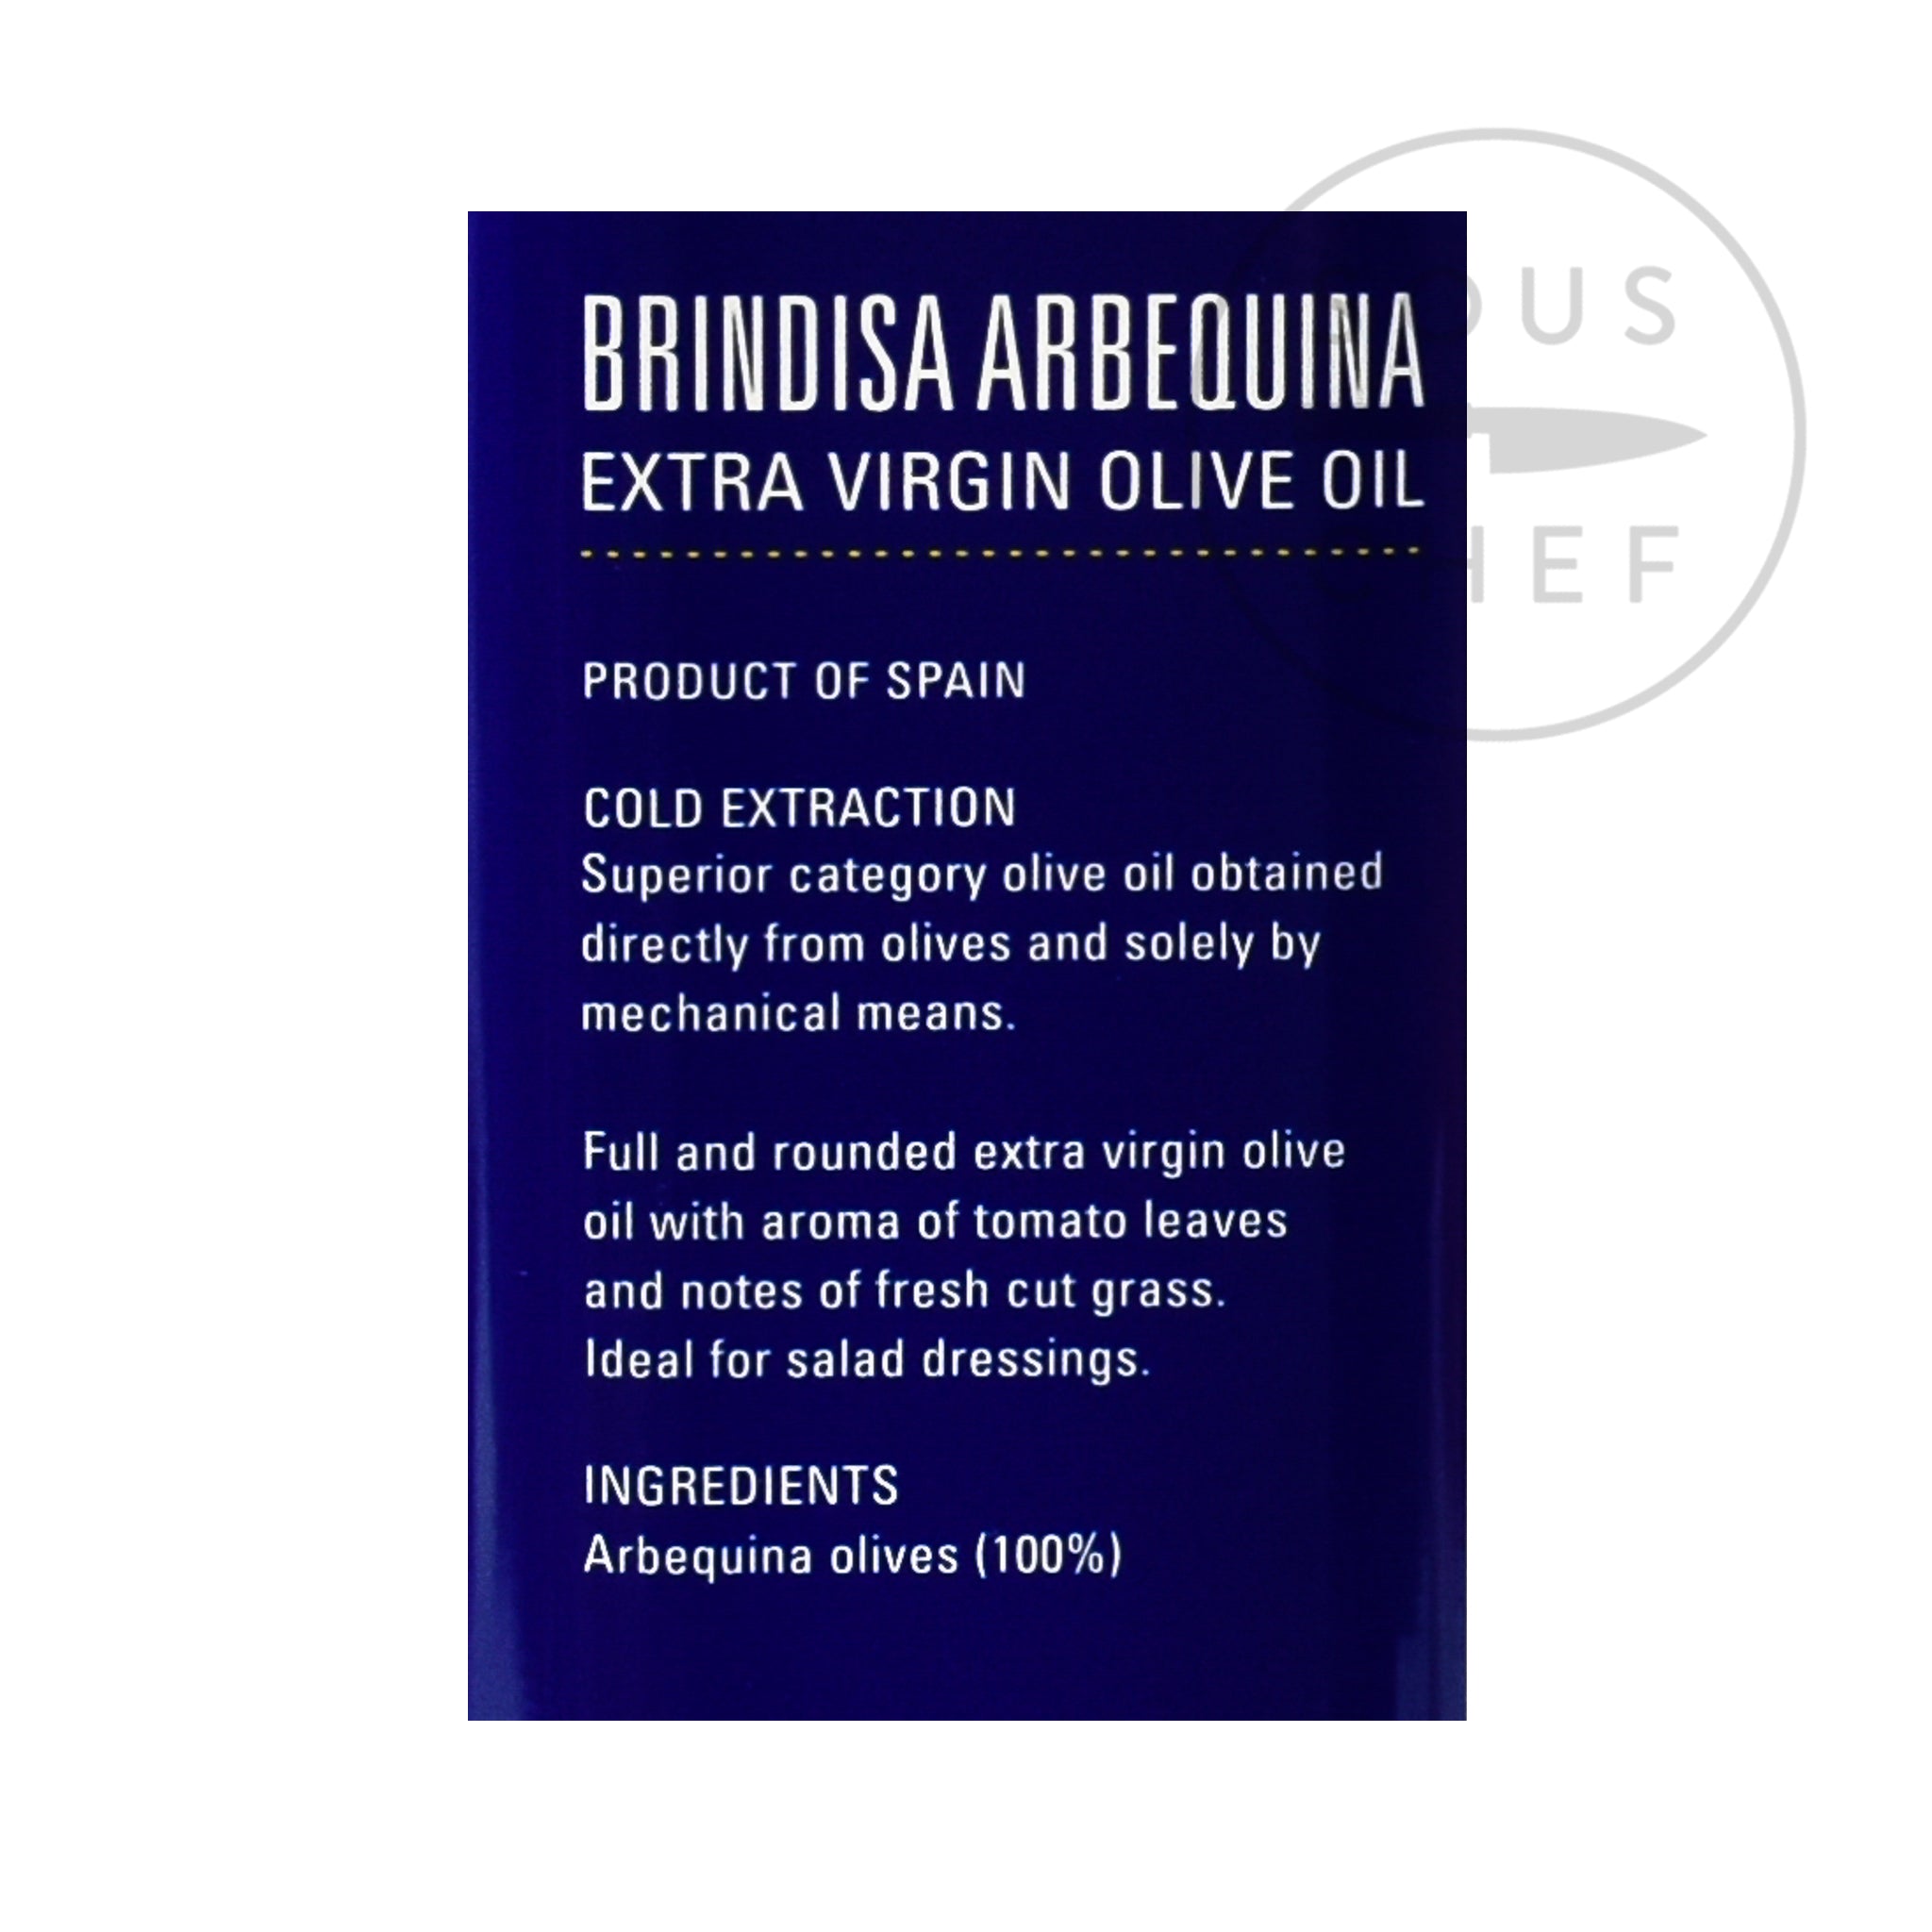 Brindisa Arbequina Extra Virgin Olive Oil 1l Ingredients Oils & Vinegars Spanish Food Ingredients Information